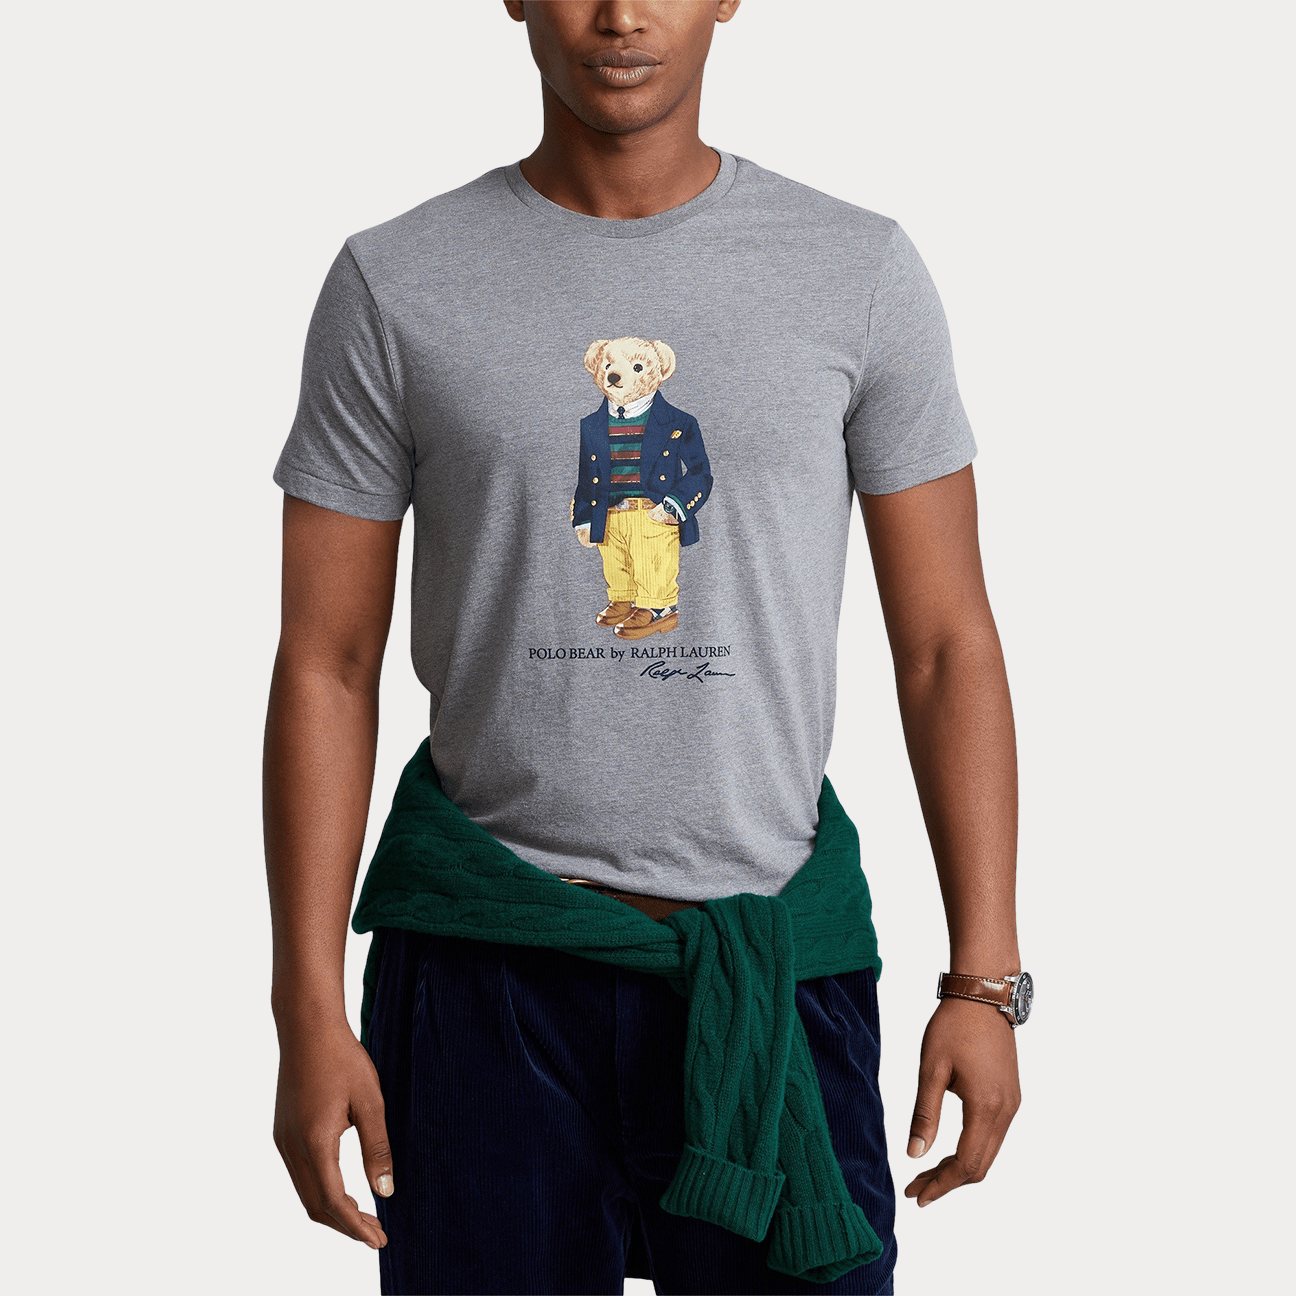 T-shirt Uomo Polo bear